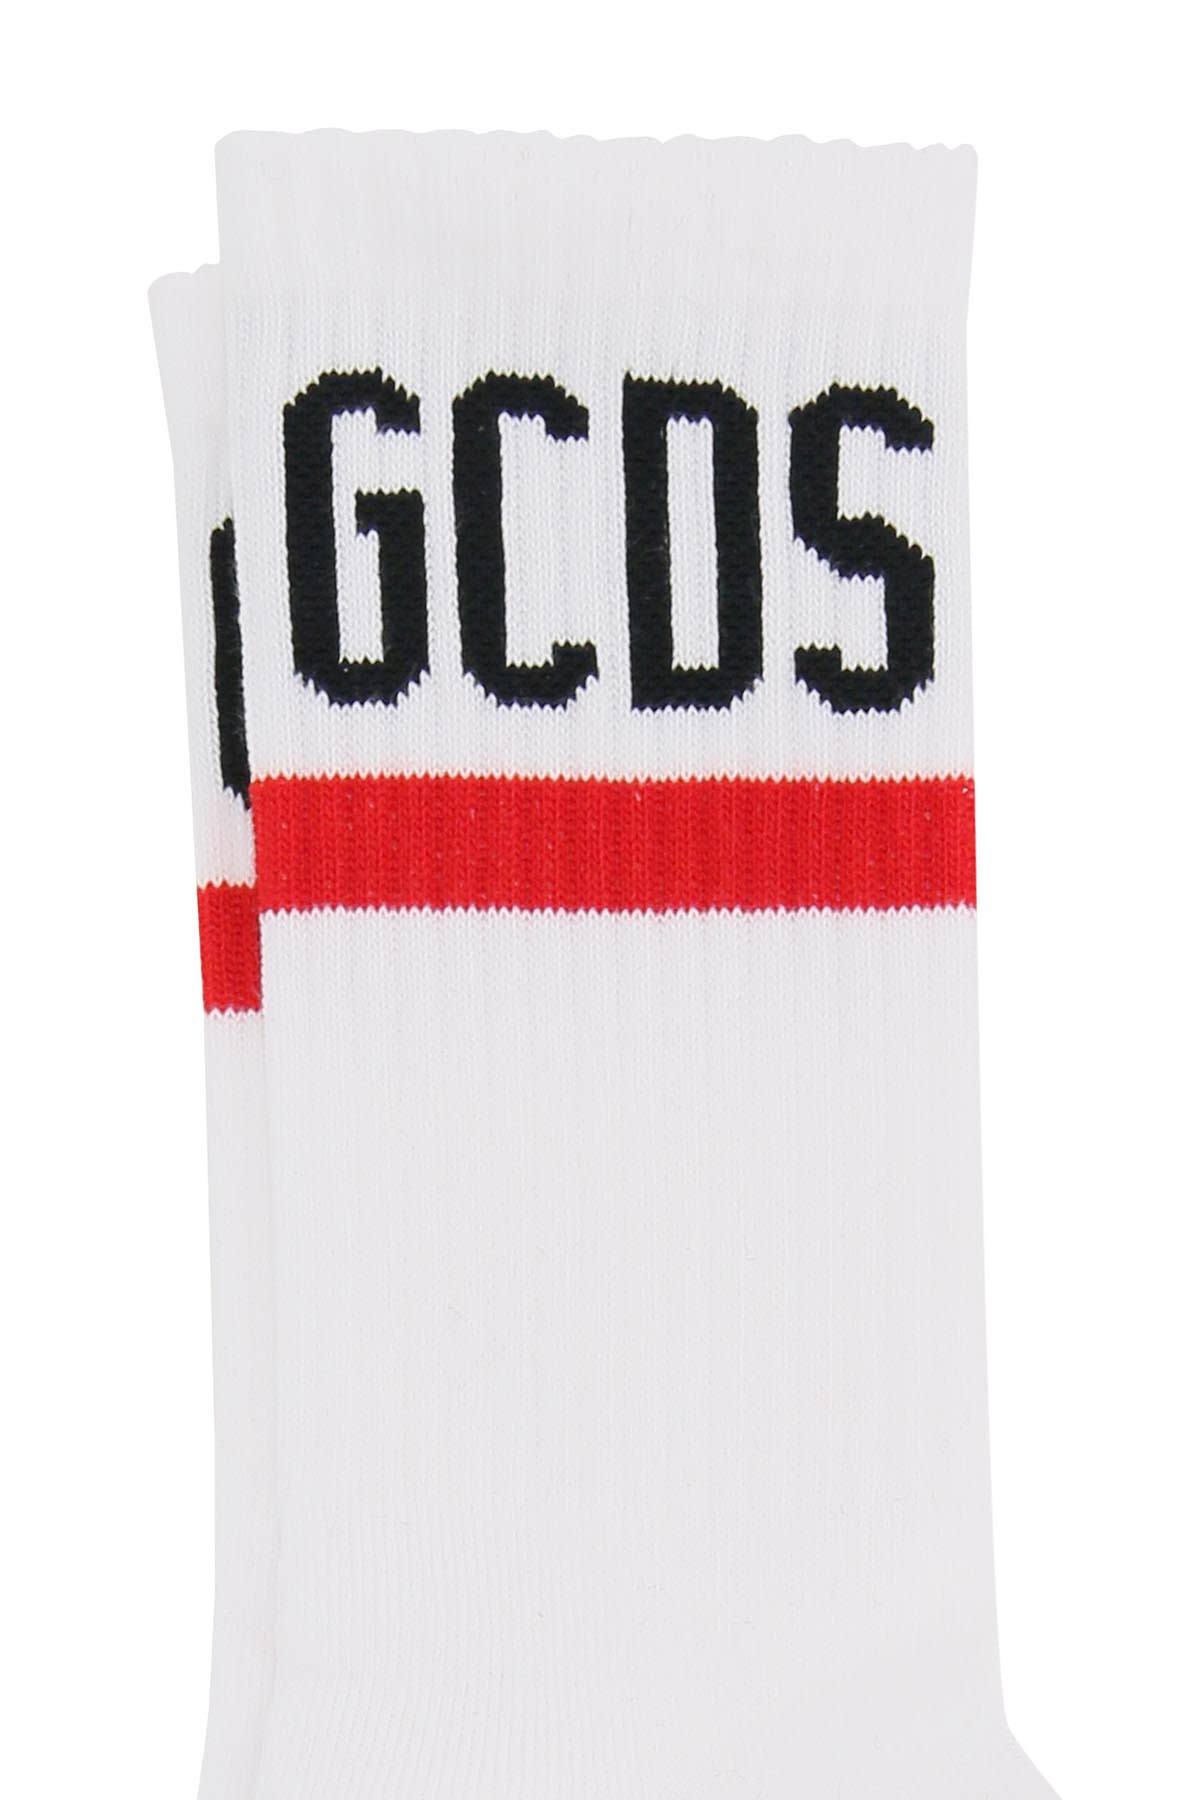 Shop Gcds Sports Socks In White